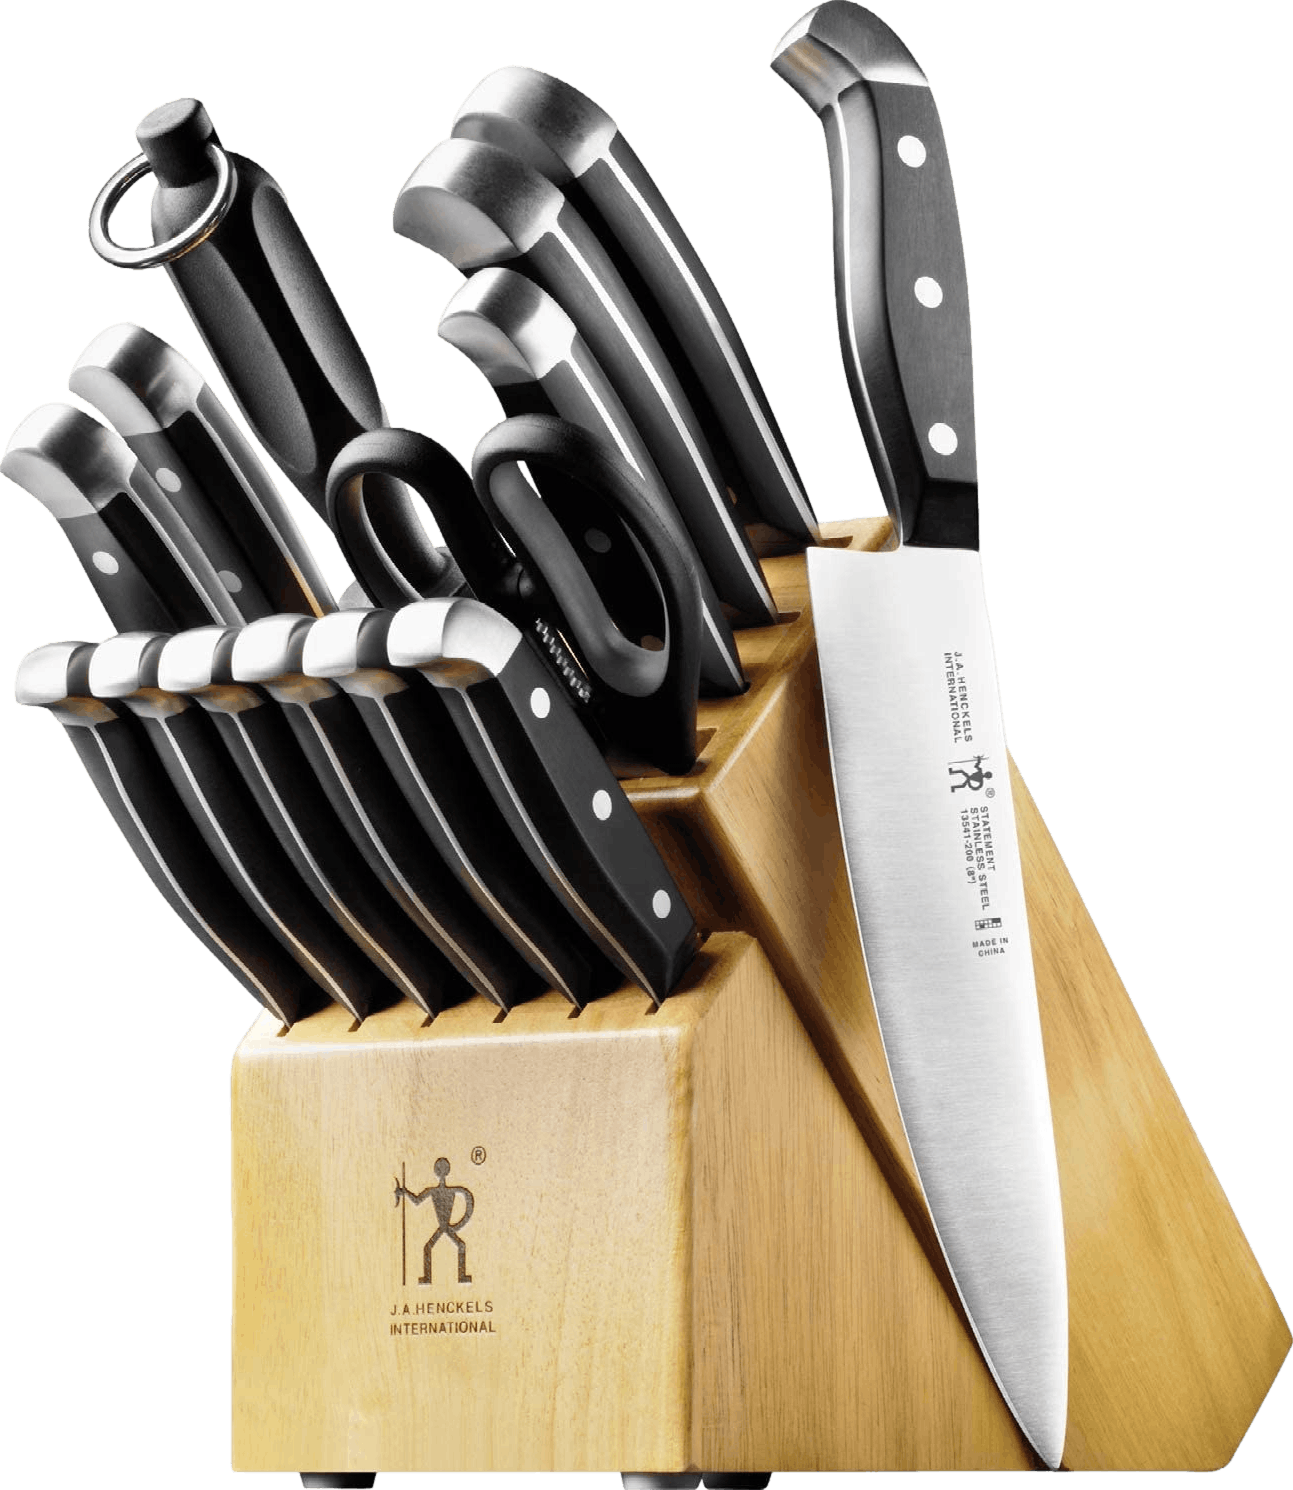 5-piece Essential Kitchen Knife Set - Chefs Delight